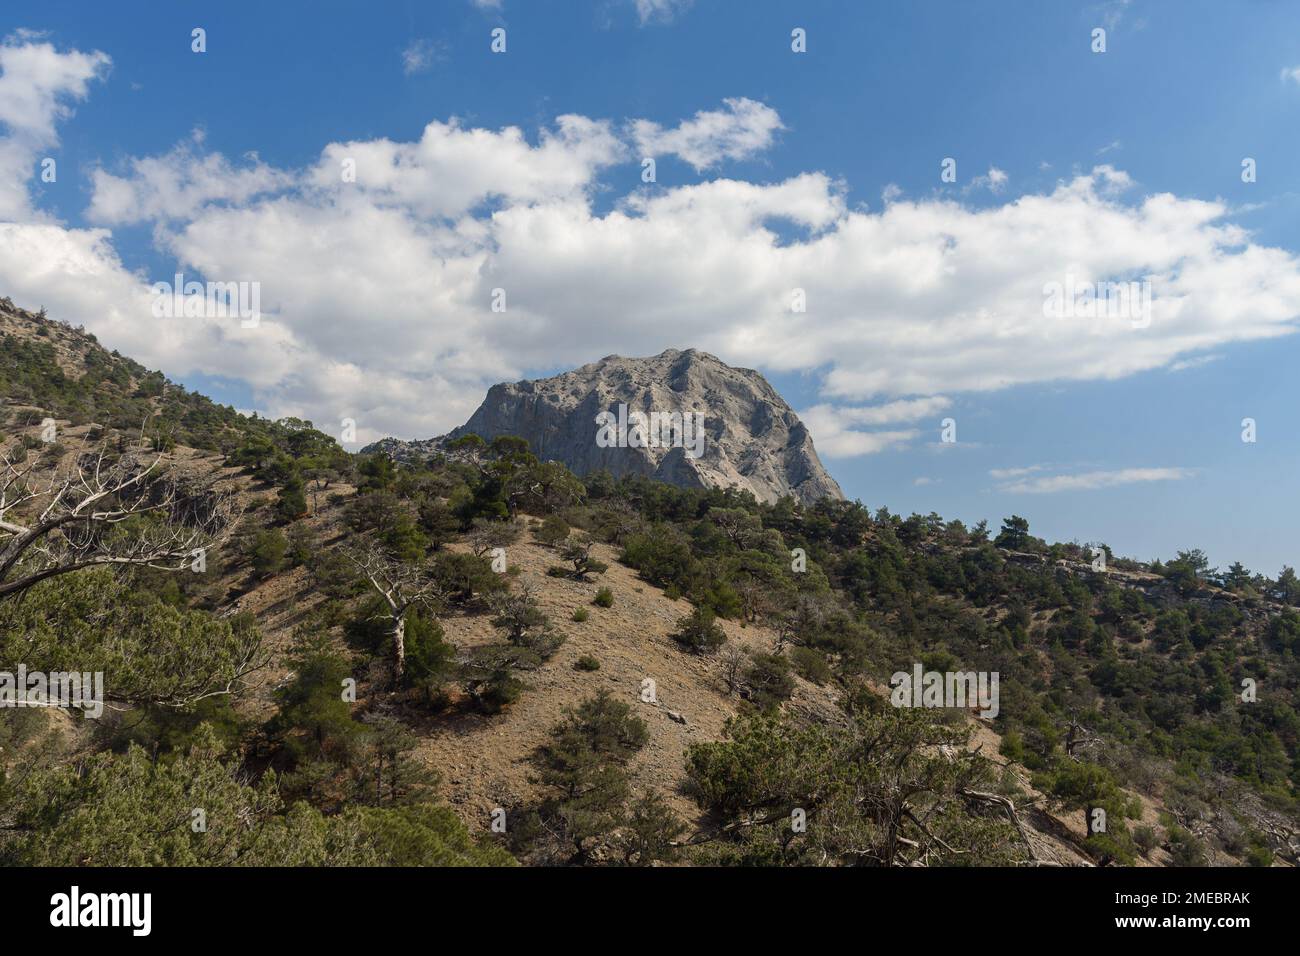 Falcon Sokol mountain in spring. Crimea Stock Photo